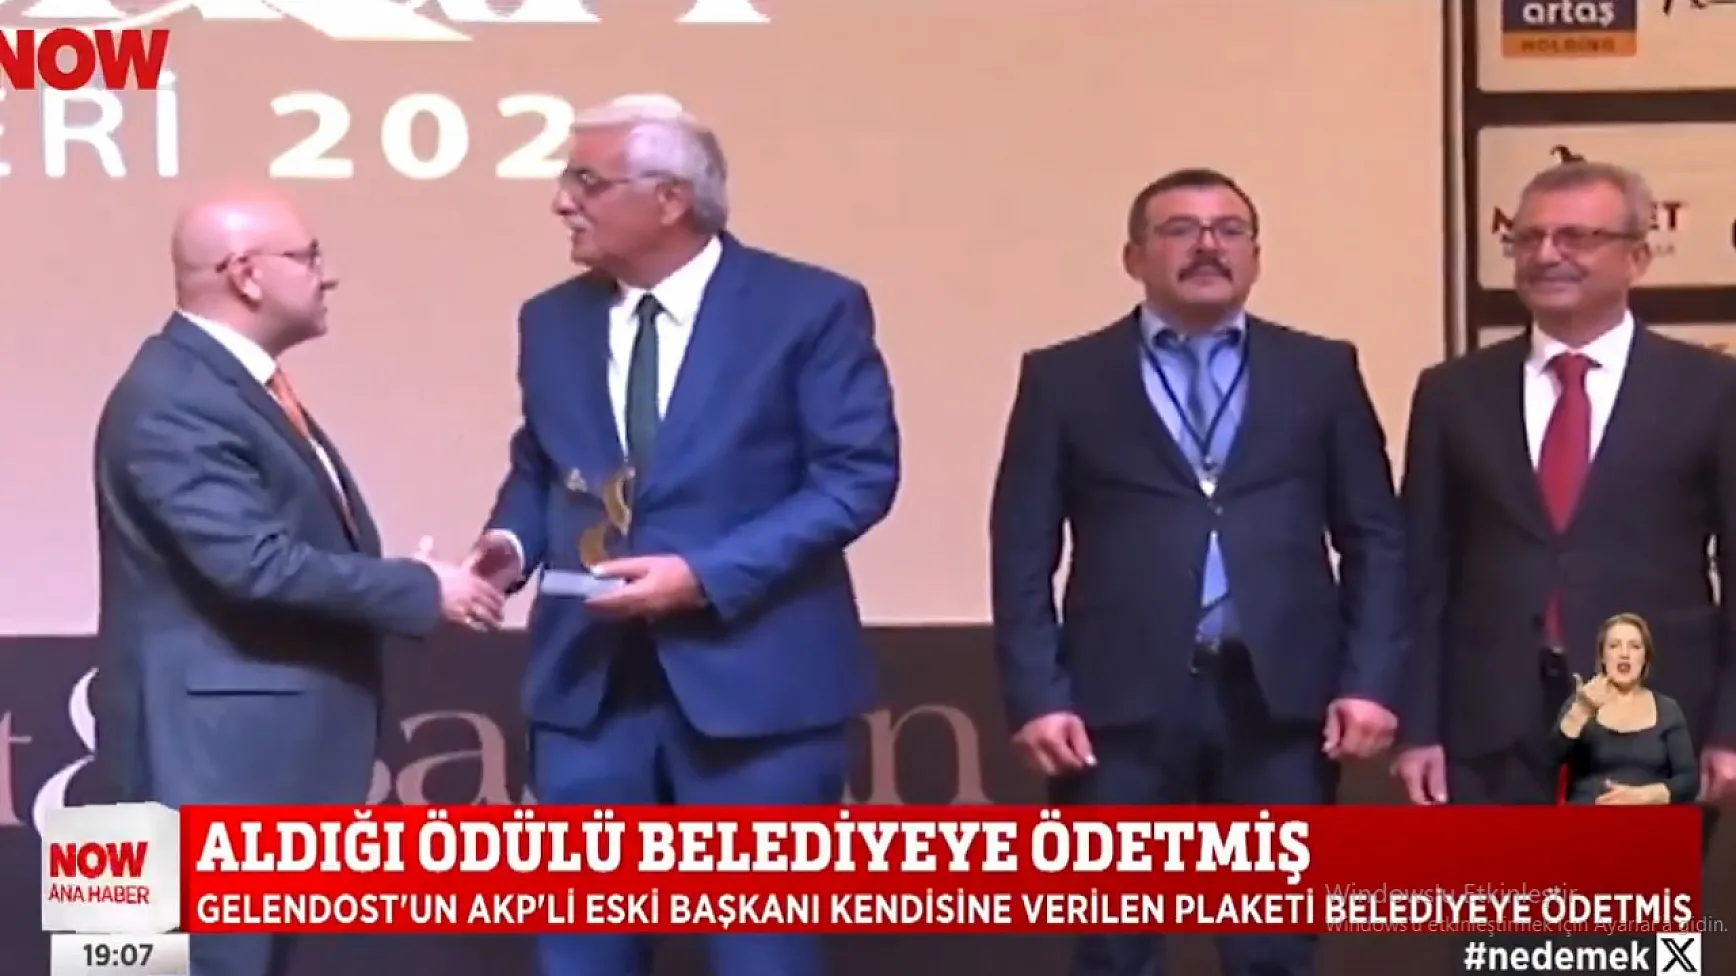 Belediye Başkanı Kayseri’de parayla ödül almış! O törende Kayserili başkanlar da ödül almıştı.